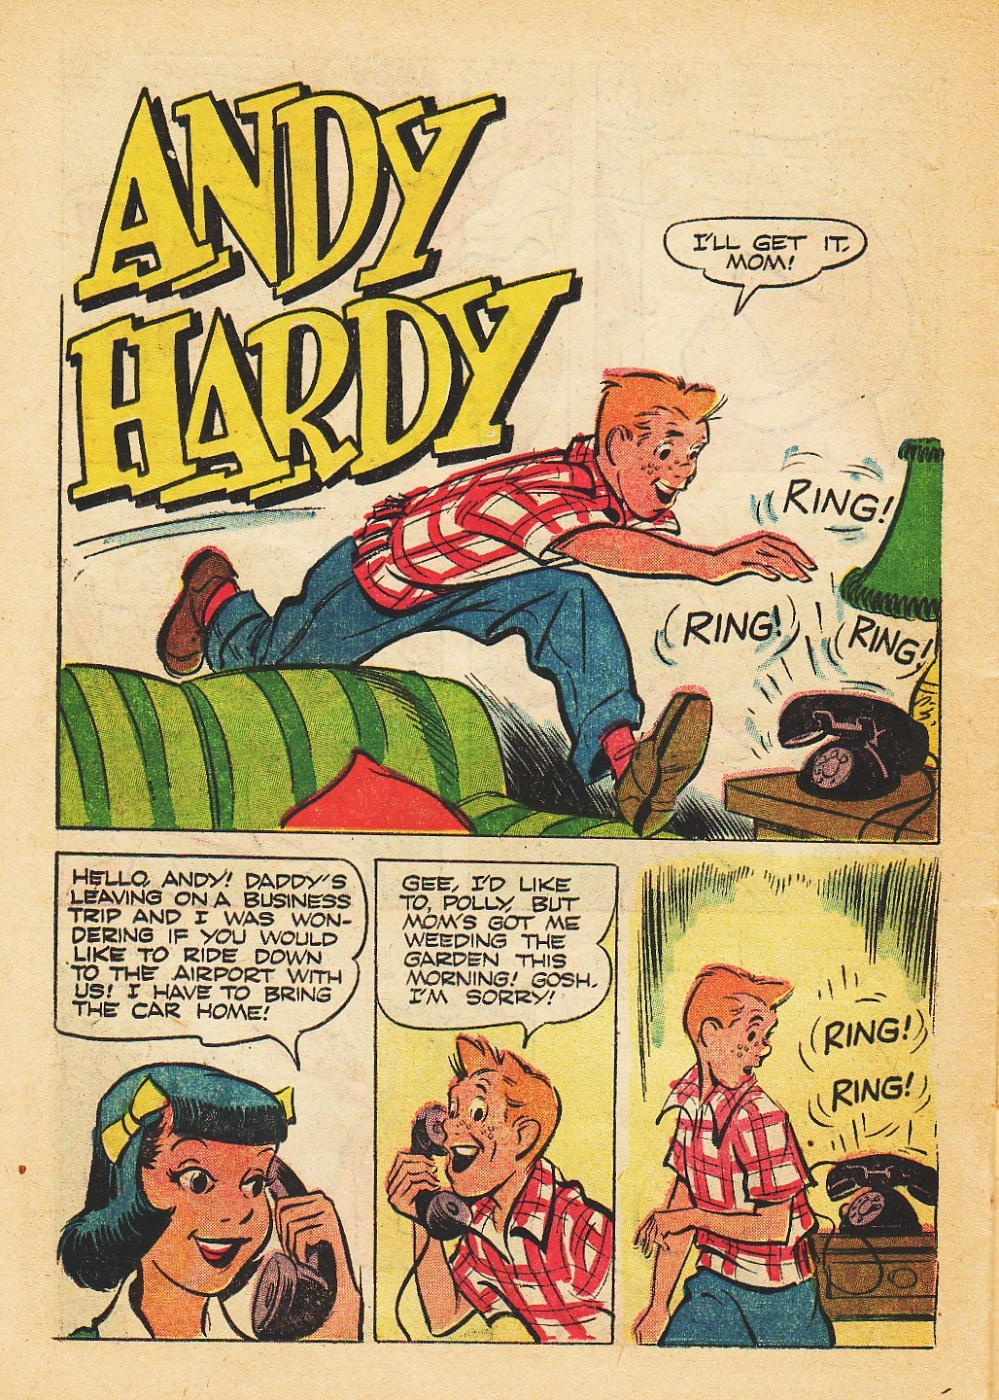 Andy-Hardy-Comic-Strips (b) (26)